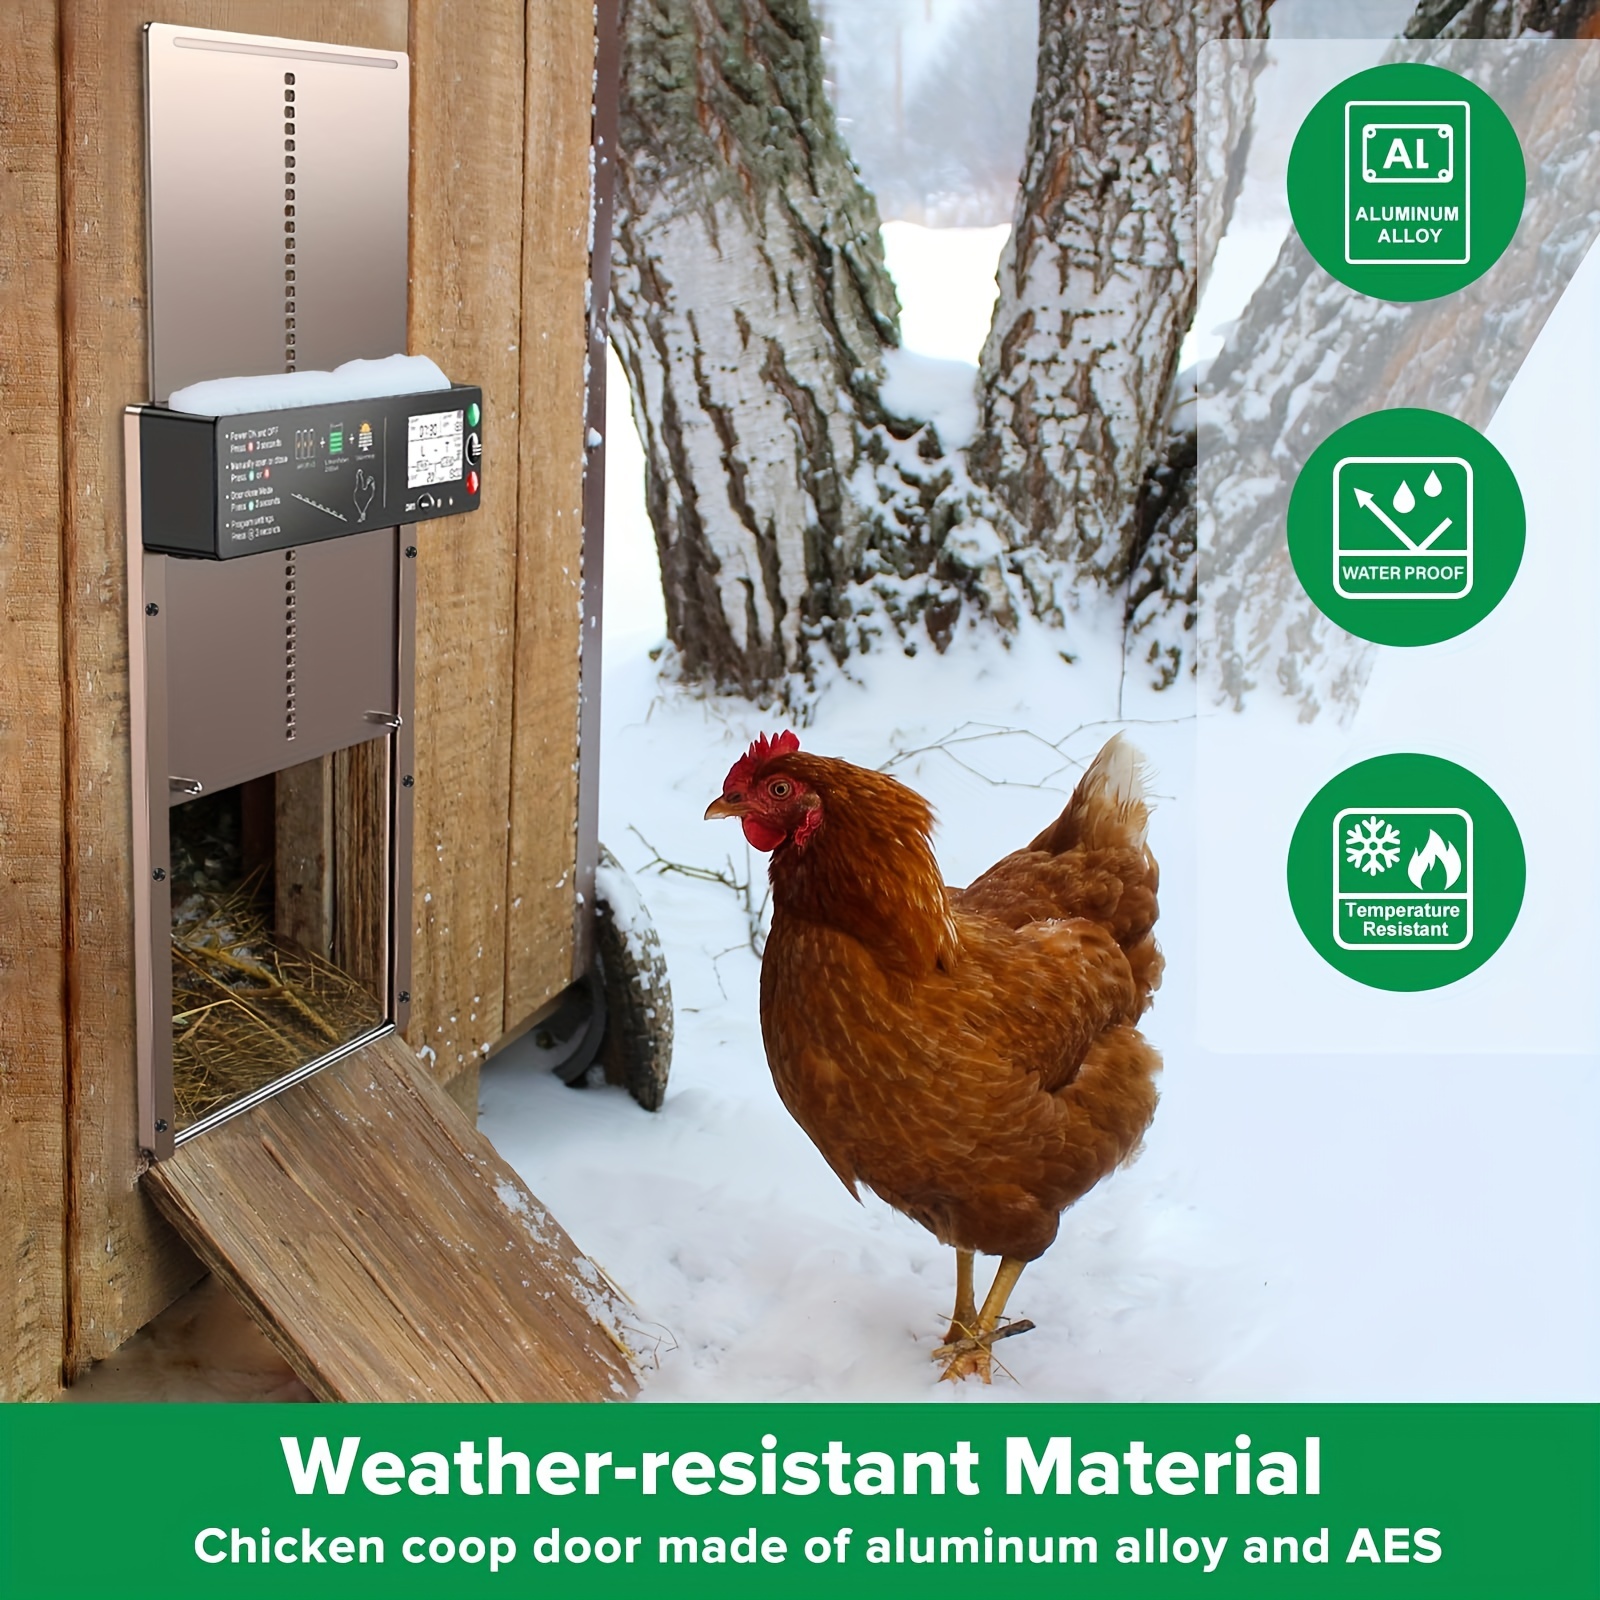 Puerta automática de gallinero alimentada por energía solar con  temporizador, puertas solares de aluminio resistentes a la intemperie,  eléctricas